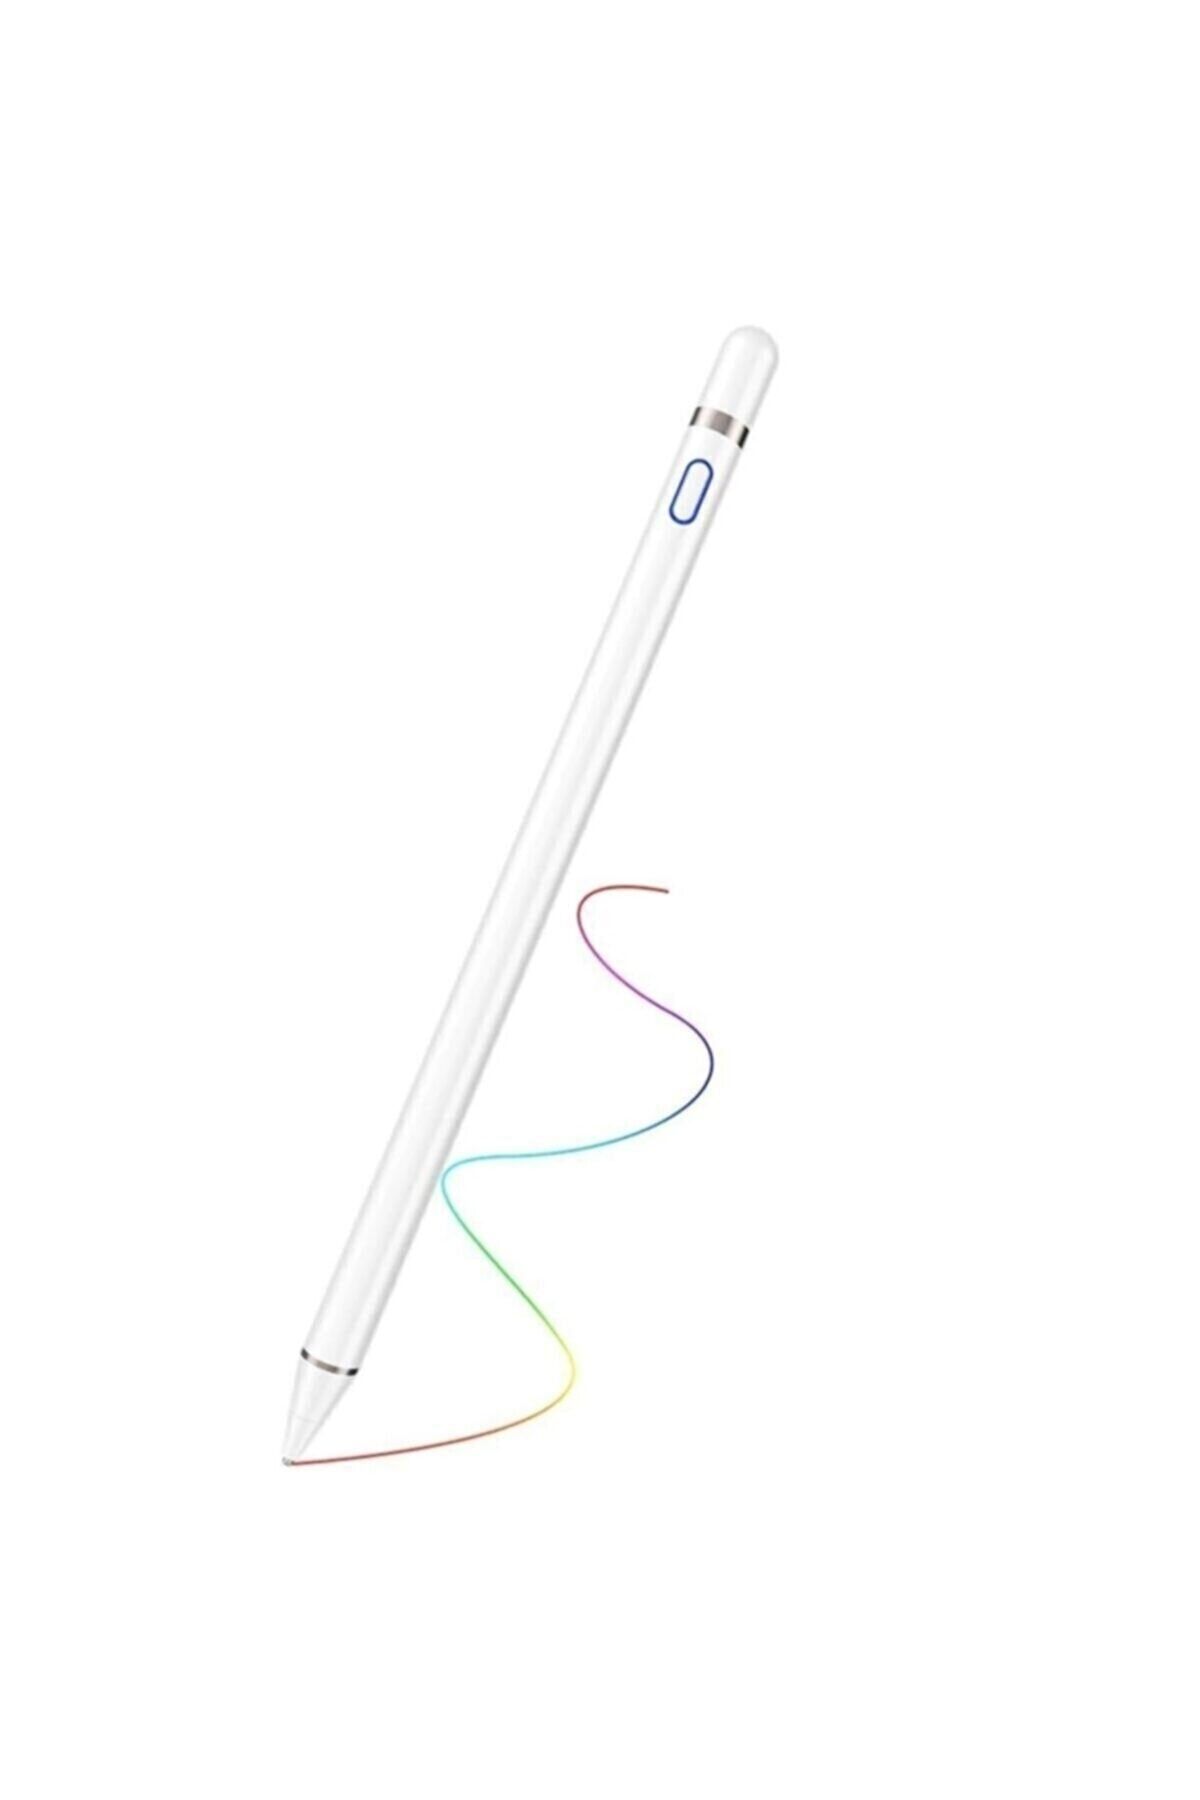 UnDePlus Stylus Kapasitif Dokunmatik Kalem Tüm Cihazlar Telefon Ile Uyumlu Çizim Tasarım Tablet Kalemi